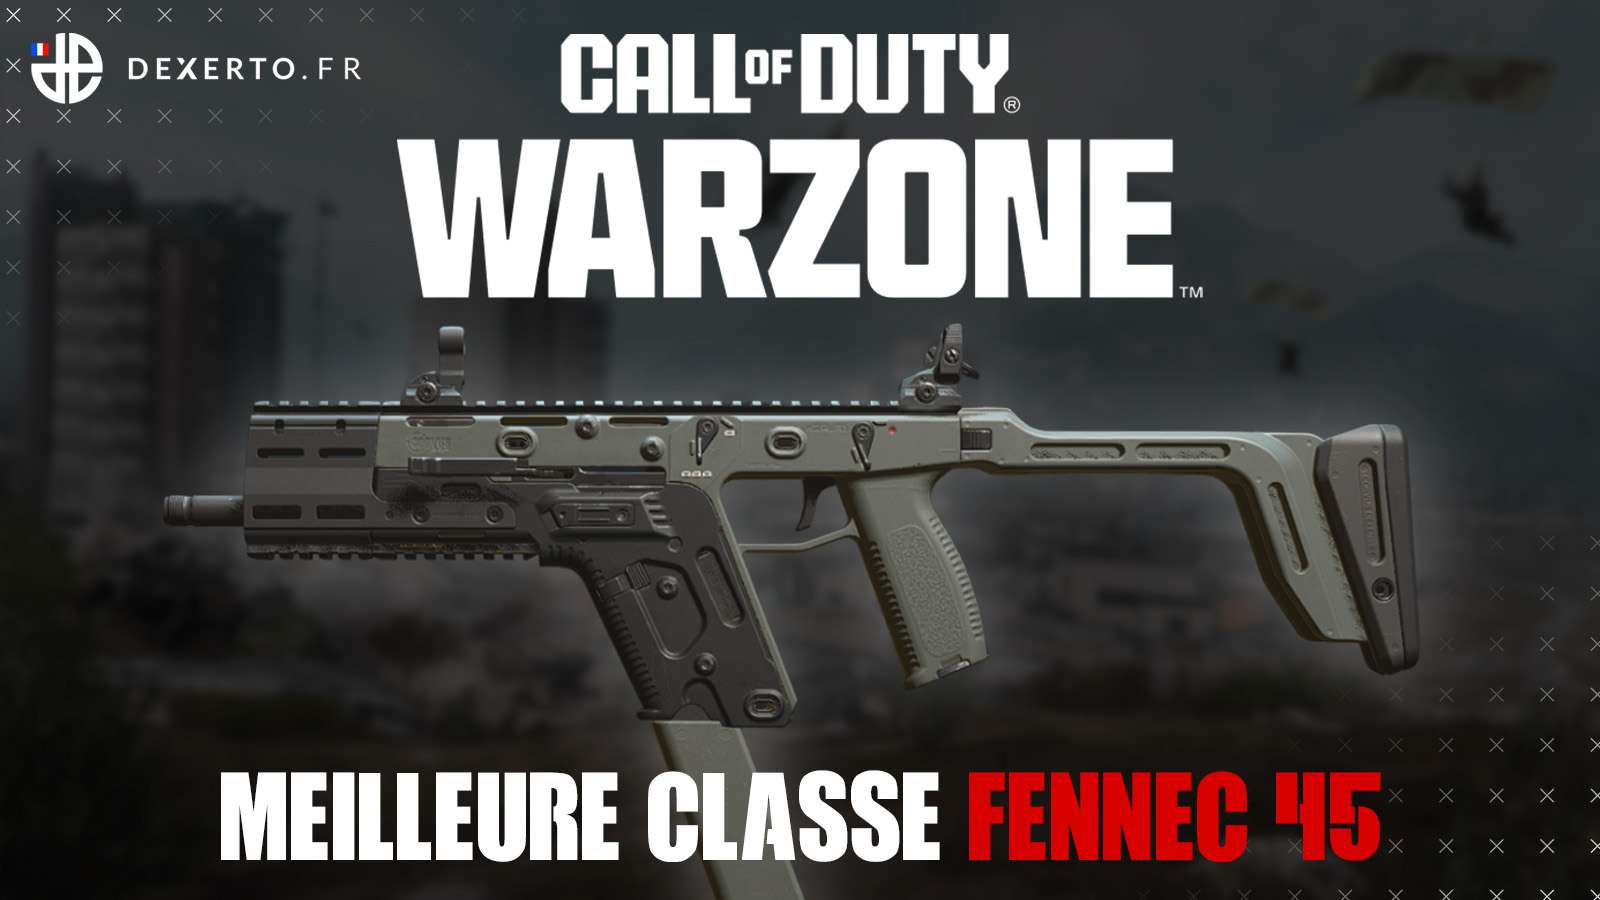 La mitraillette Fennec 45 dans Warzone